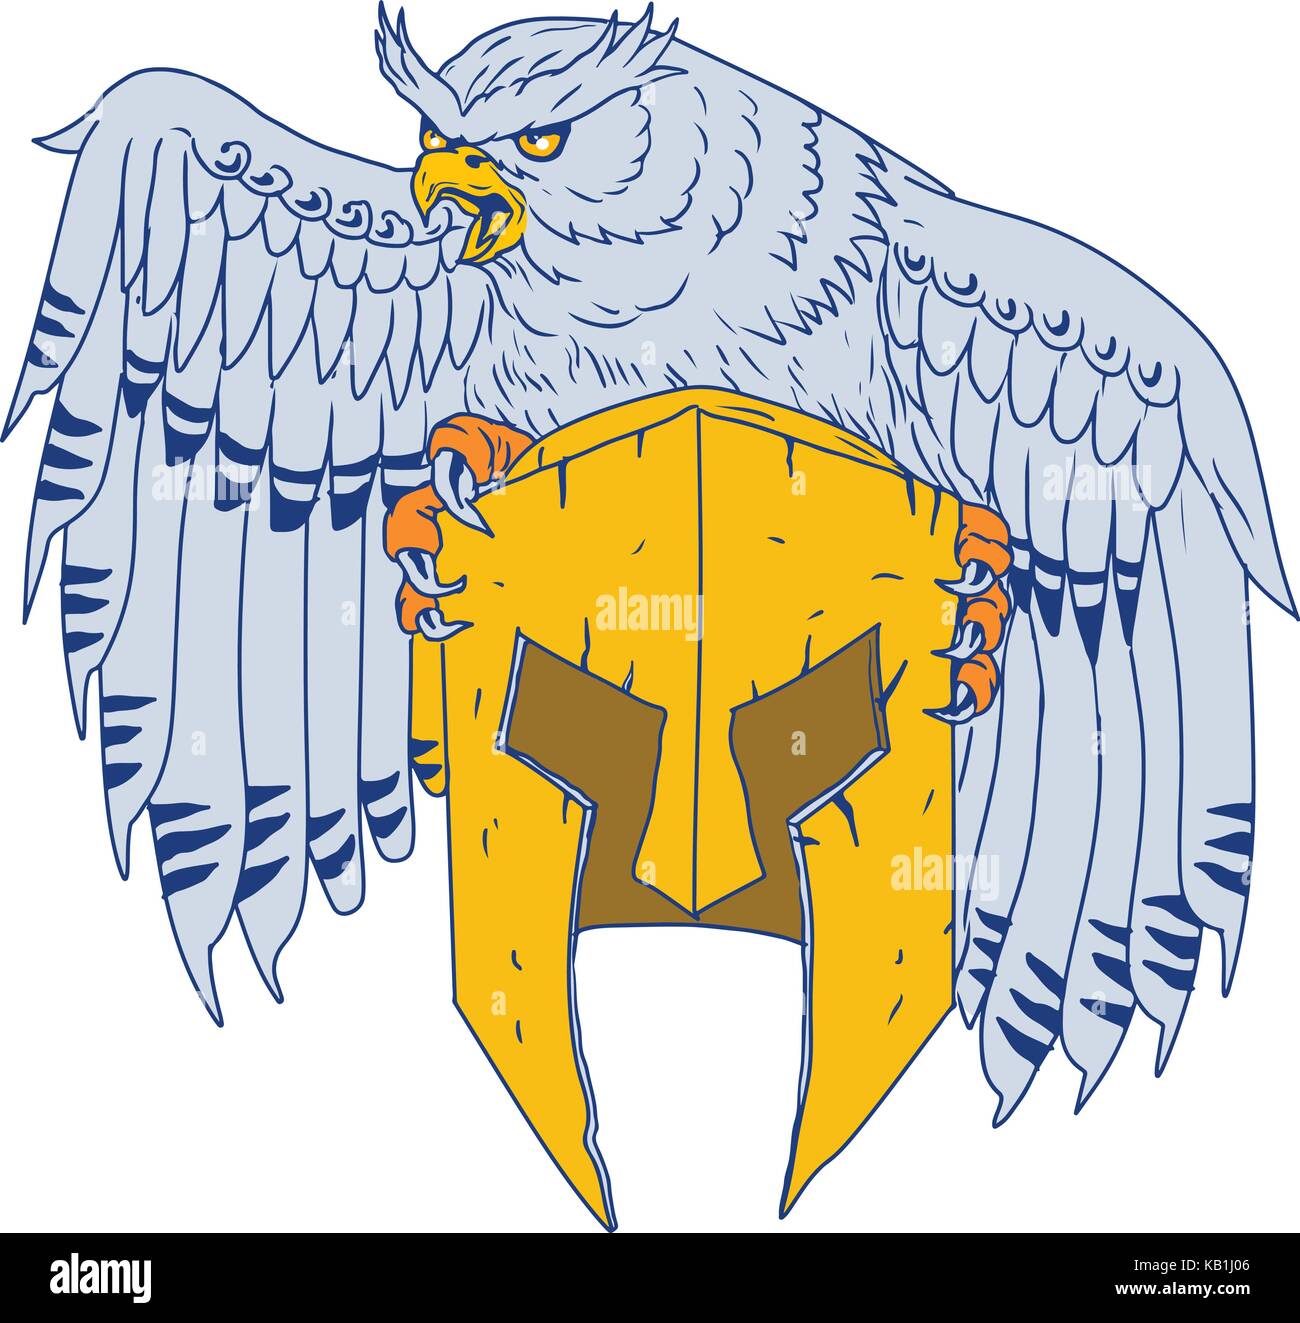 Croquis dessin illustration style de un Américain-duc d'Amérique ou d'ancien monde-eagle owl du genre bubo serrant percher sur un casque spartiate sur isoler Illustration de Vecteur